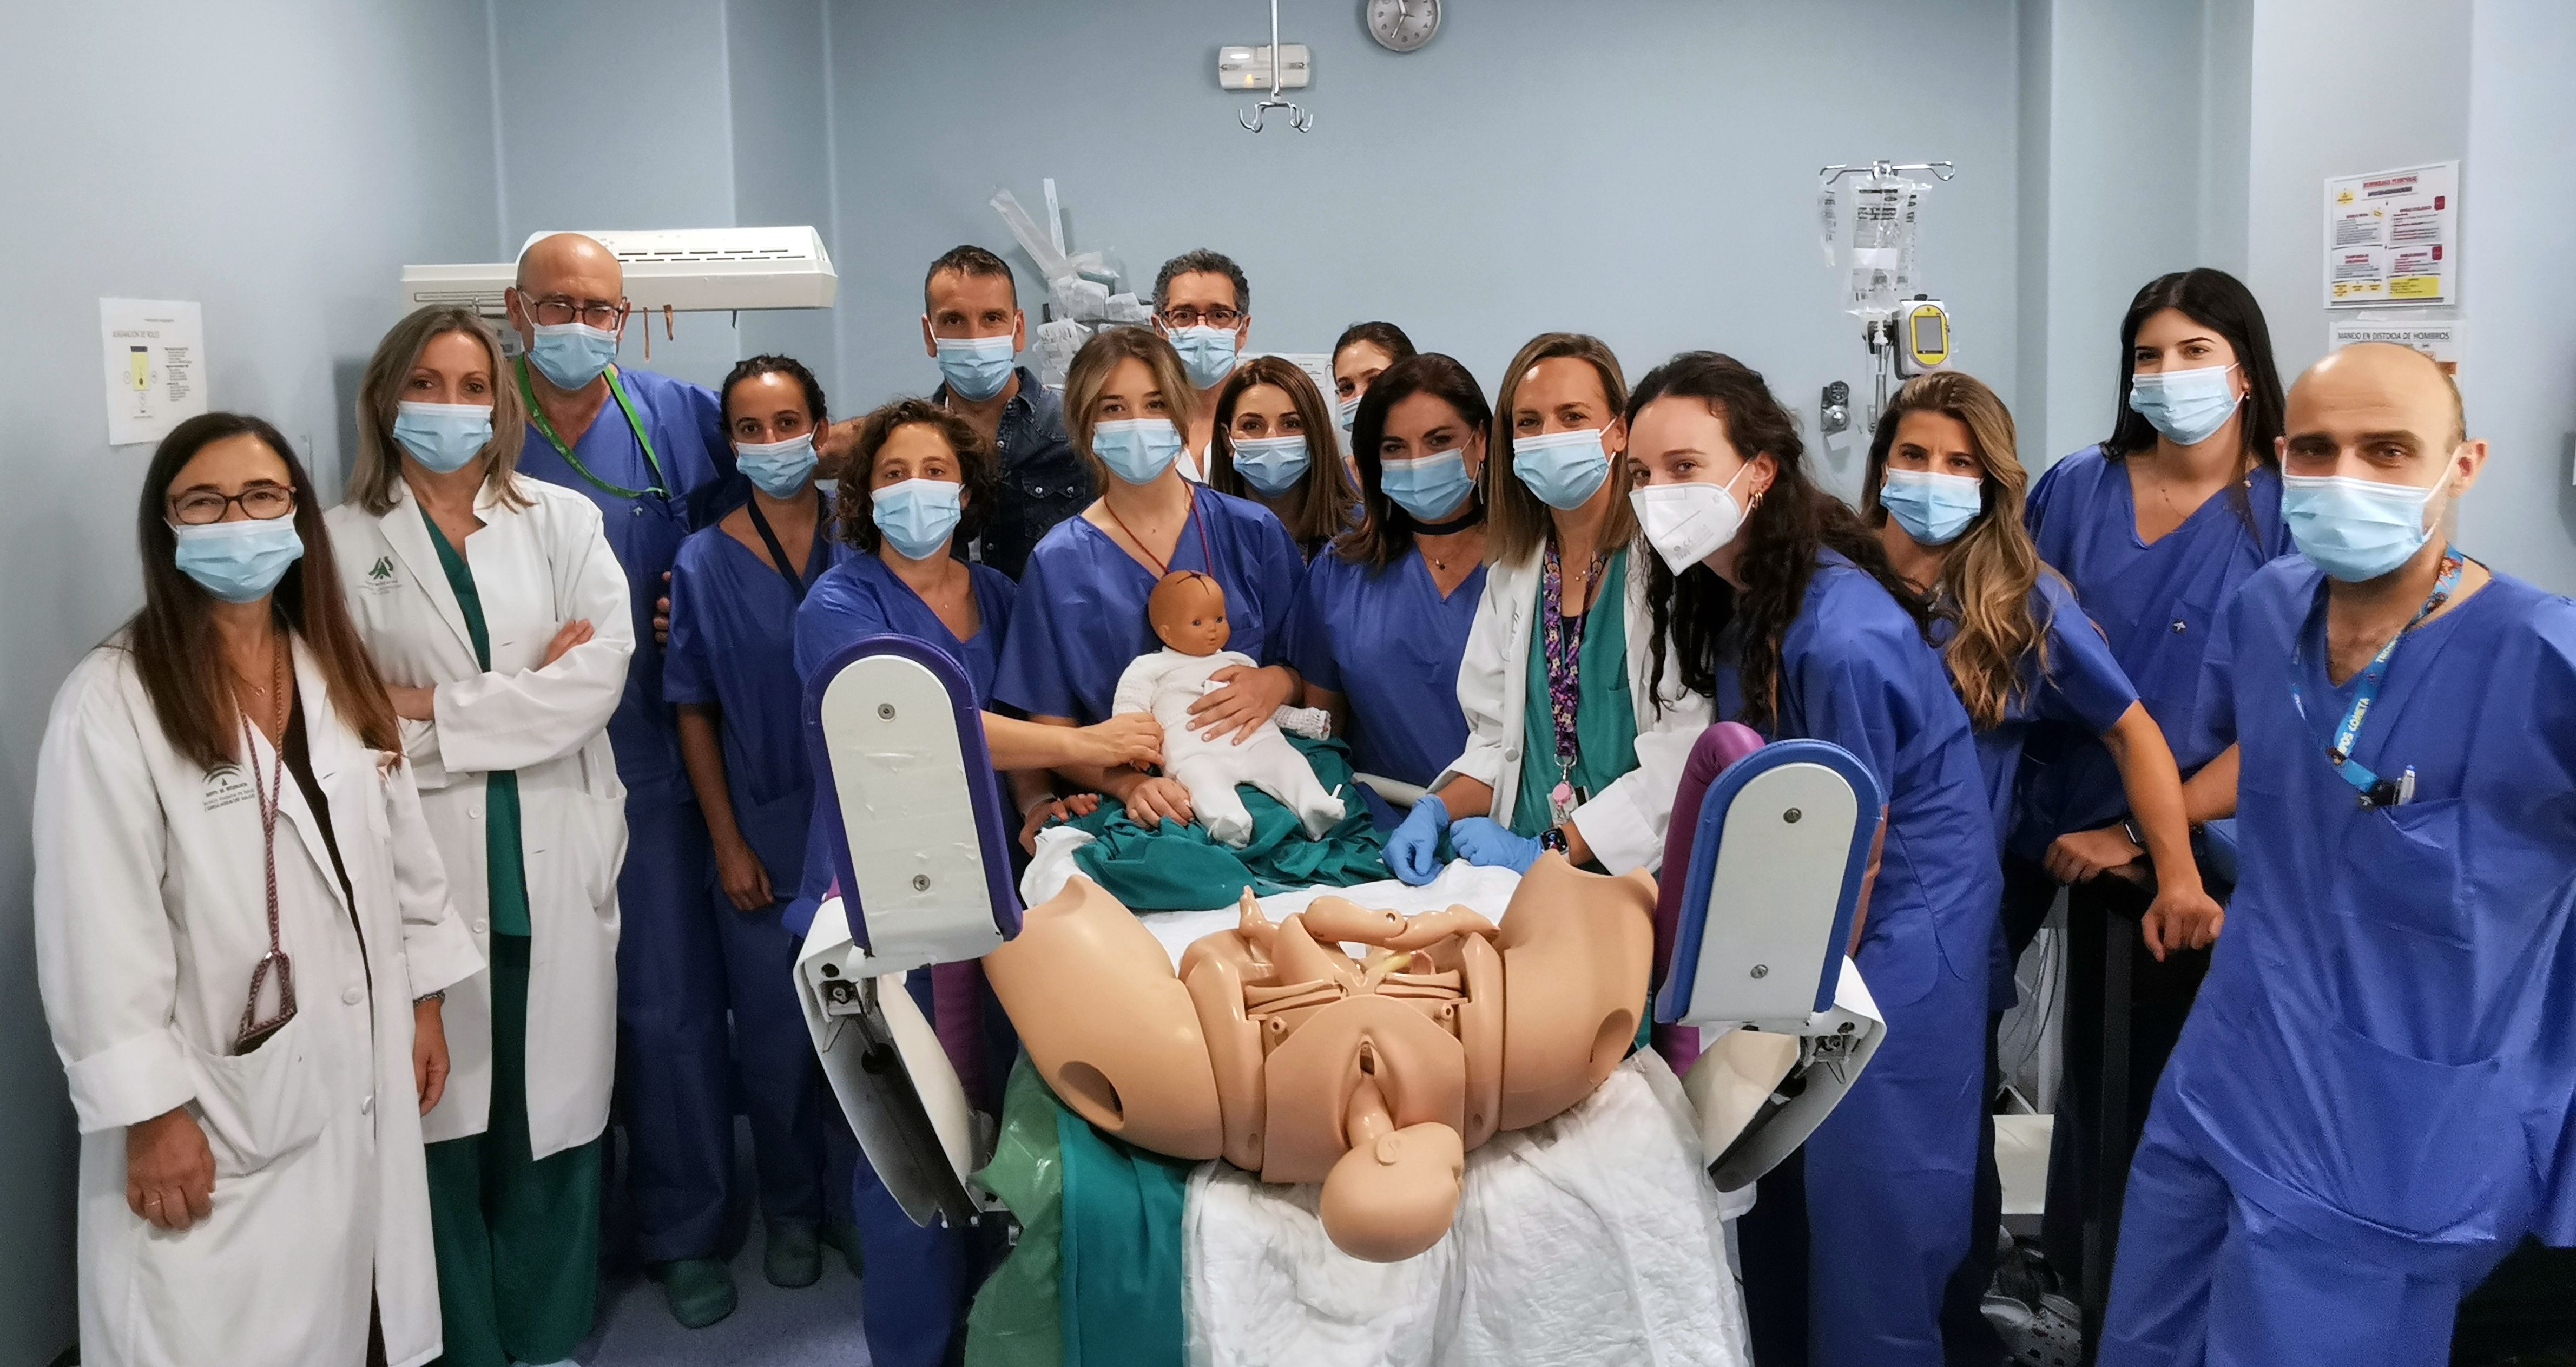 El Hospital de Valme desarrolla un novedoso programa de formación en Urgencias Obstétricas: simulación clínica, multiprofesional y en entorno real